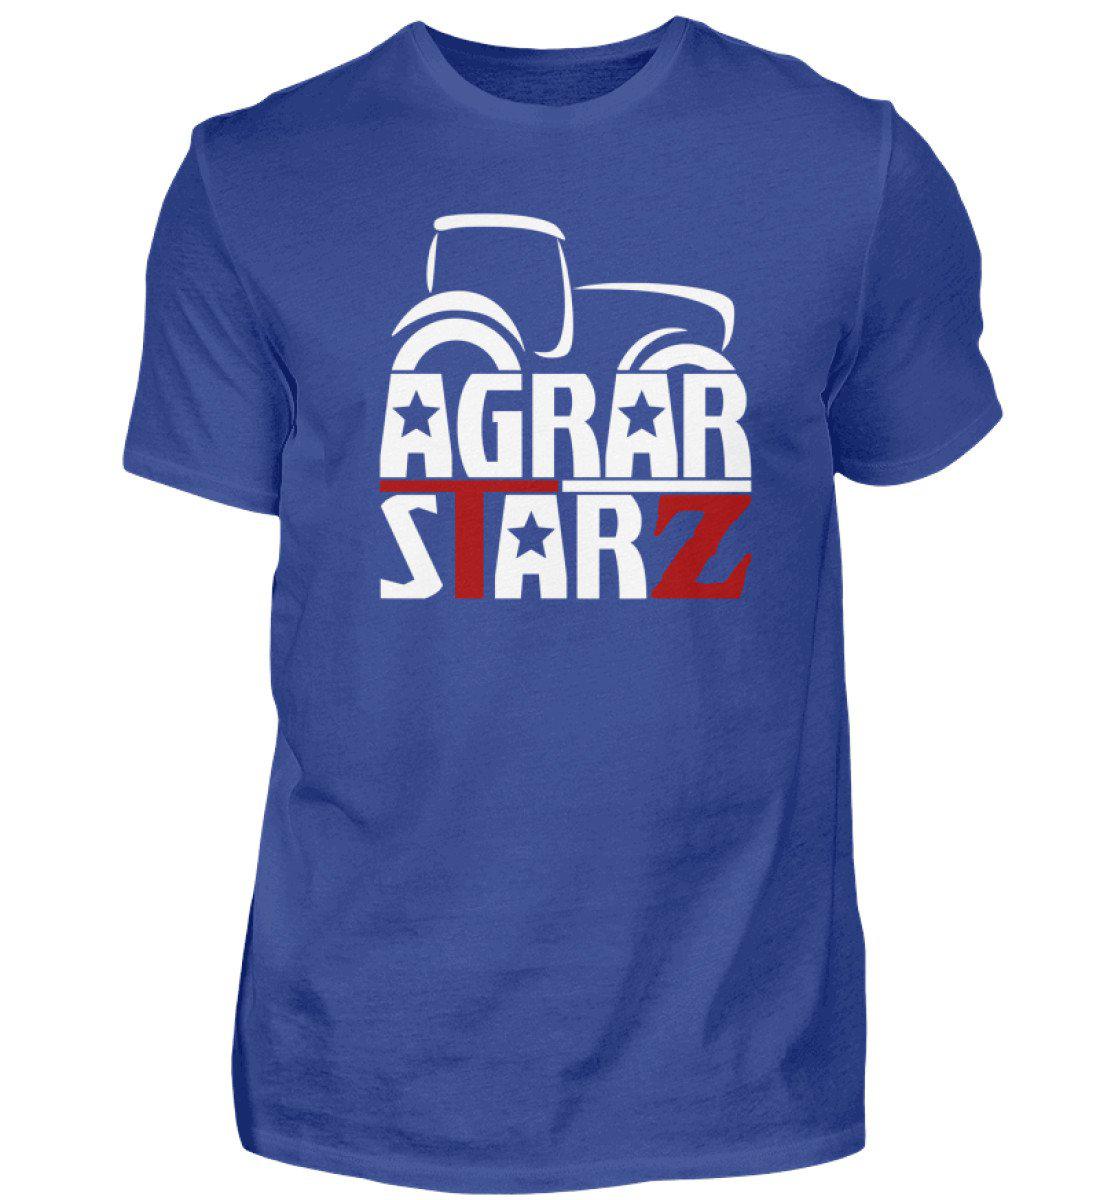 Agrarstarz · Herren T-Shirt-Herren Basic T-Shirt-Royal Blue-S-Agrarstarz